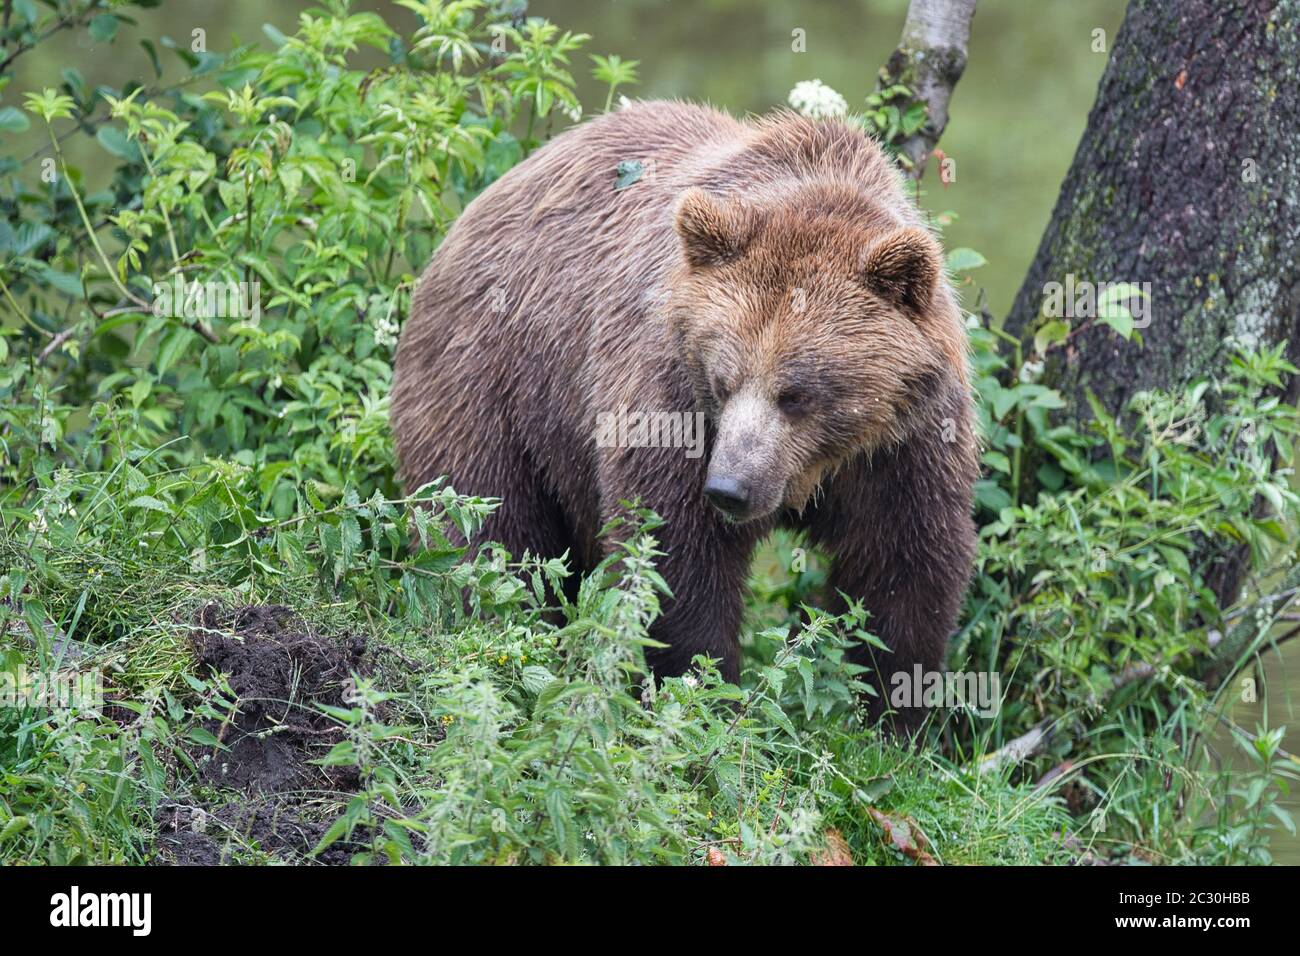 Braunbär, Braunbaer, Ursus arctos, Saeugetier, Brown bear, mammal, hunter, large, nature, european, Stock Photo